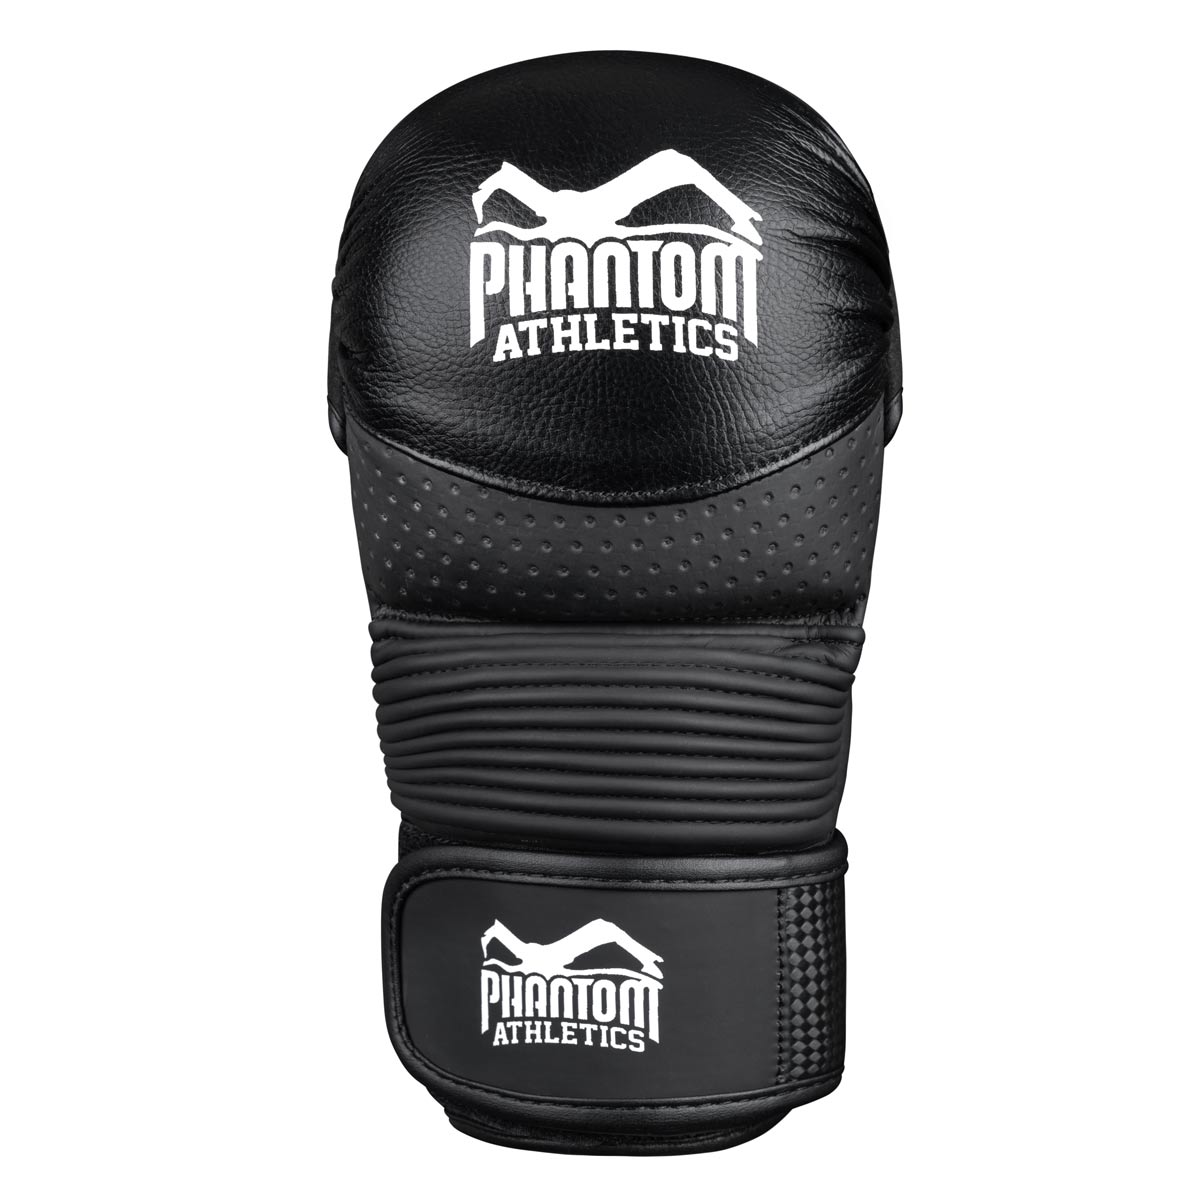 Die Phantom RIOT PRO MMA Sparringshandschuhe. Ideal für dein Kampfsport Training und Amateur Wettkämpfe. Die hochwertigsten und sichersten MMA Handschuhe auf dem Markt.  Perfekte Passform und überragende Qualität für Training und Sparring. Der spezielle Aufbau bietet dir überragenden Support der ganzen Hand.